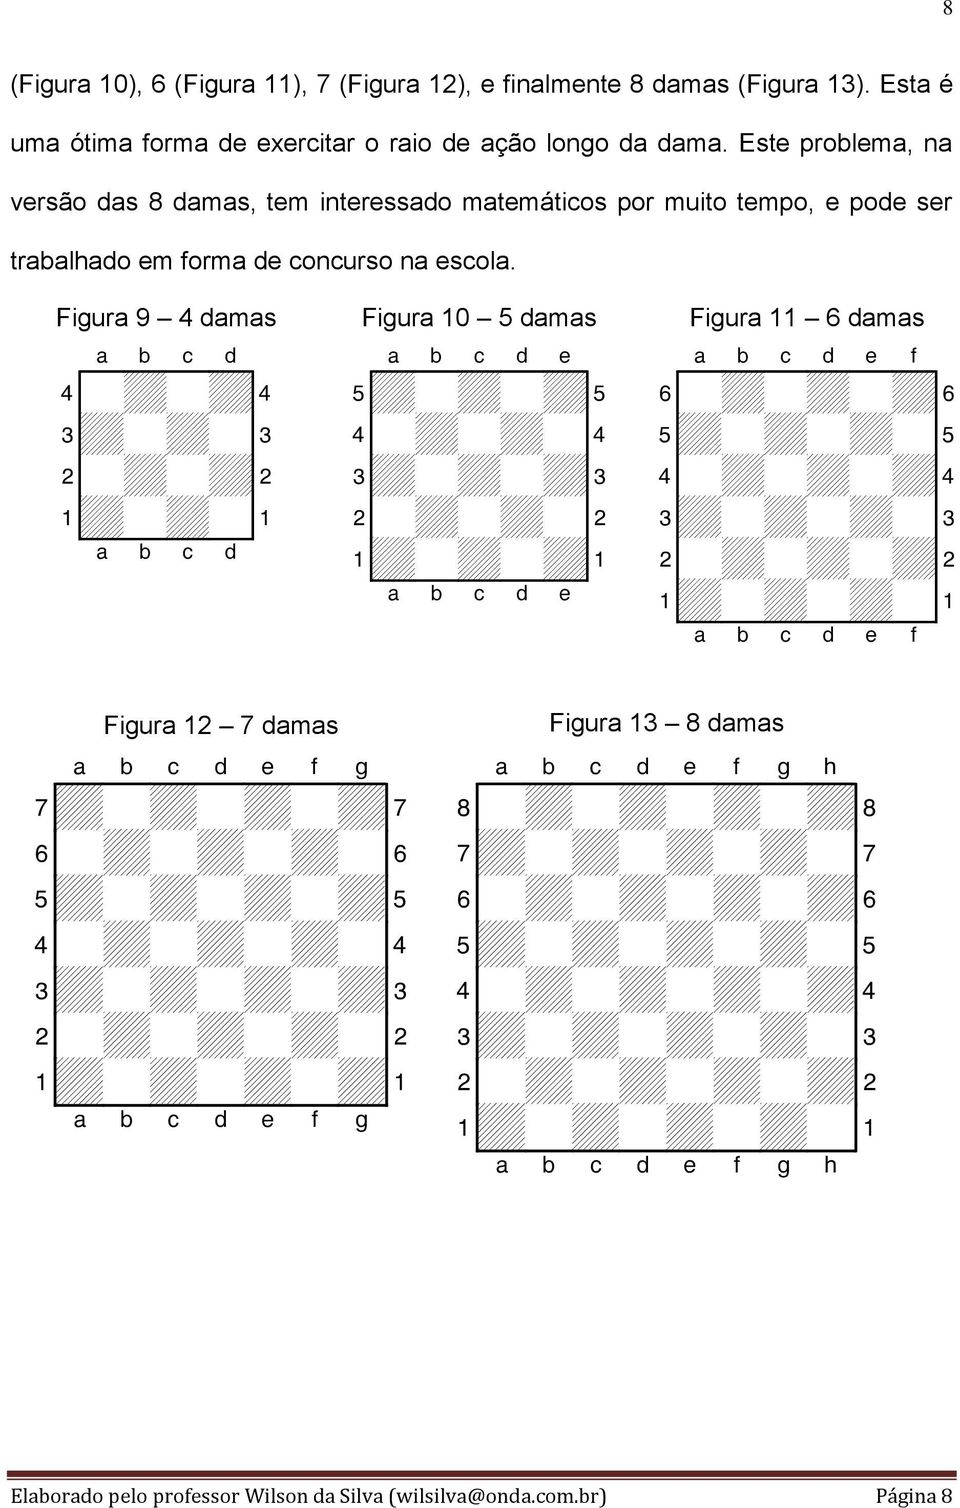 Figura 9 4 damas Figura 10 5 damas Figura 11 6 damas XABCDY 4-+-+$ 3+-+-# 2-+-+" 1+-+-! xabcdy XABCDEY 5+-+-+% 4-+-+-$ 3+-+-+# 2-+-+-" 1+-+-+!